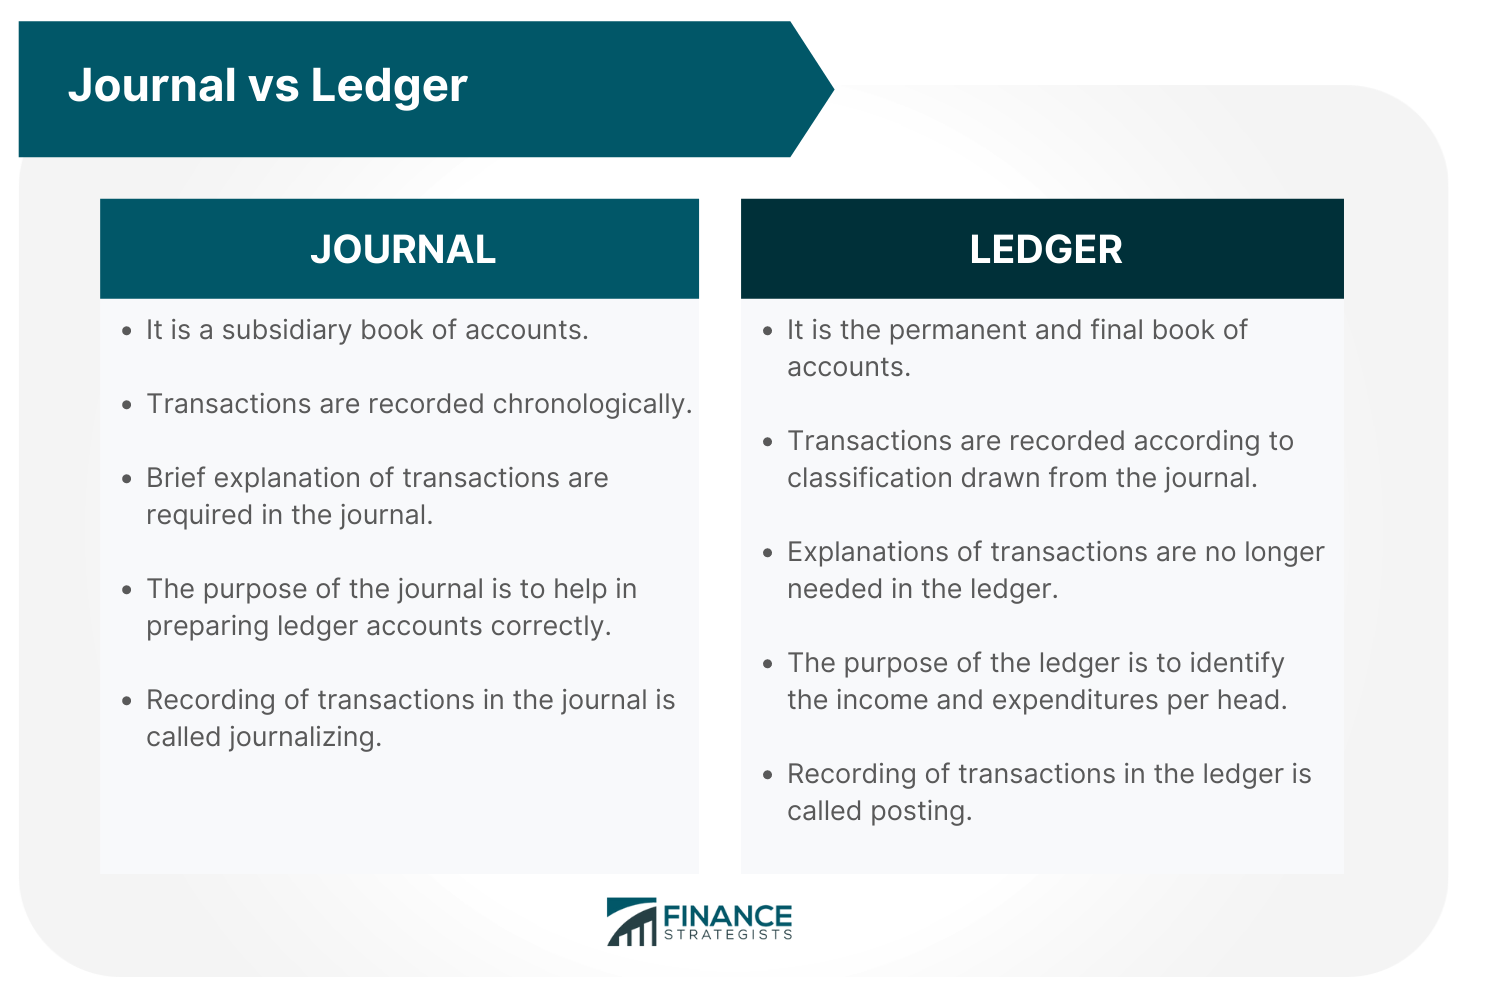 Journal_vs_Ledger